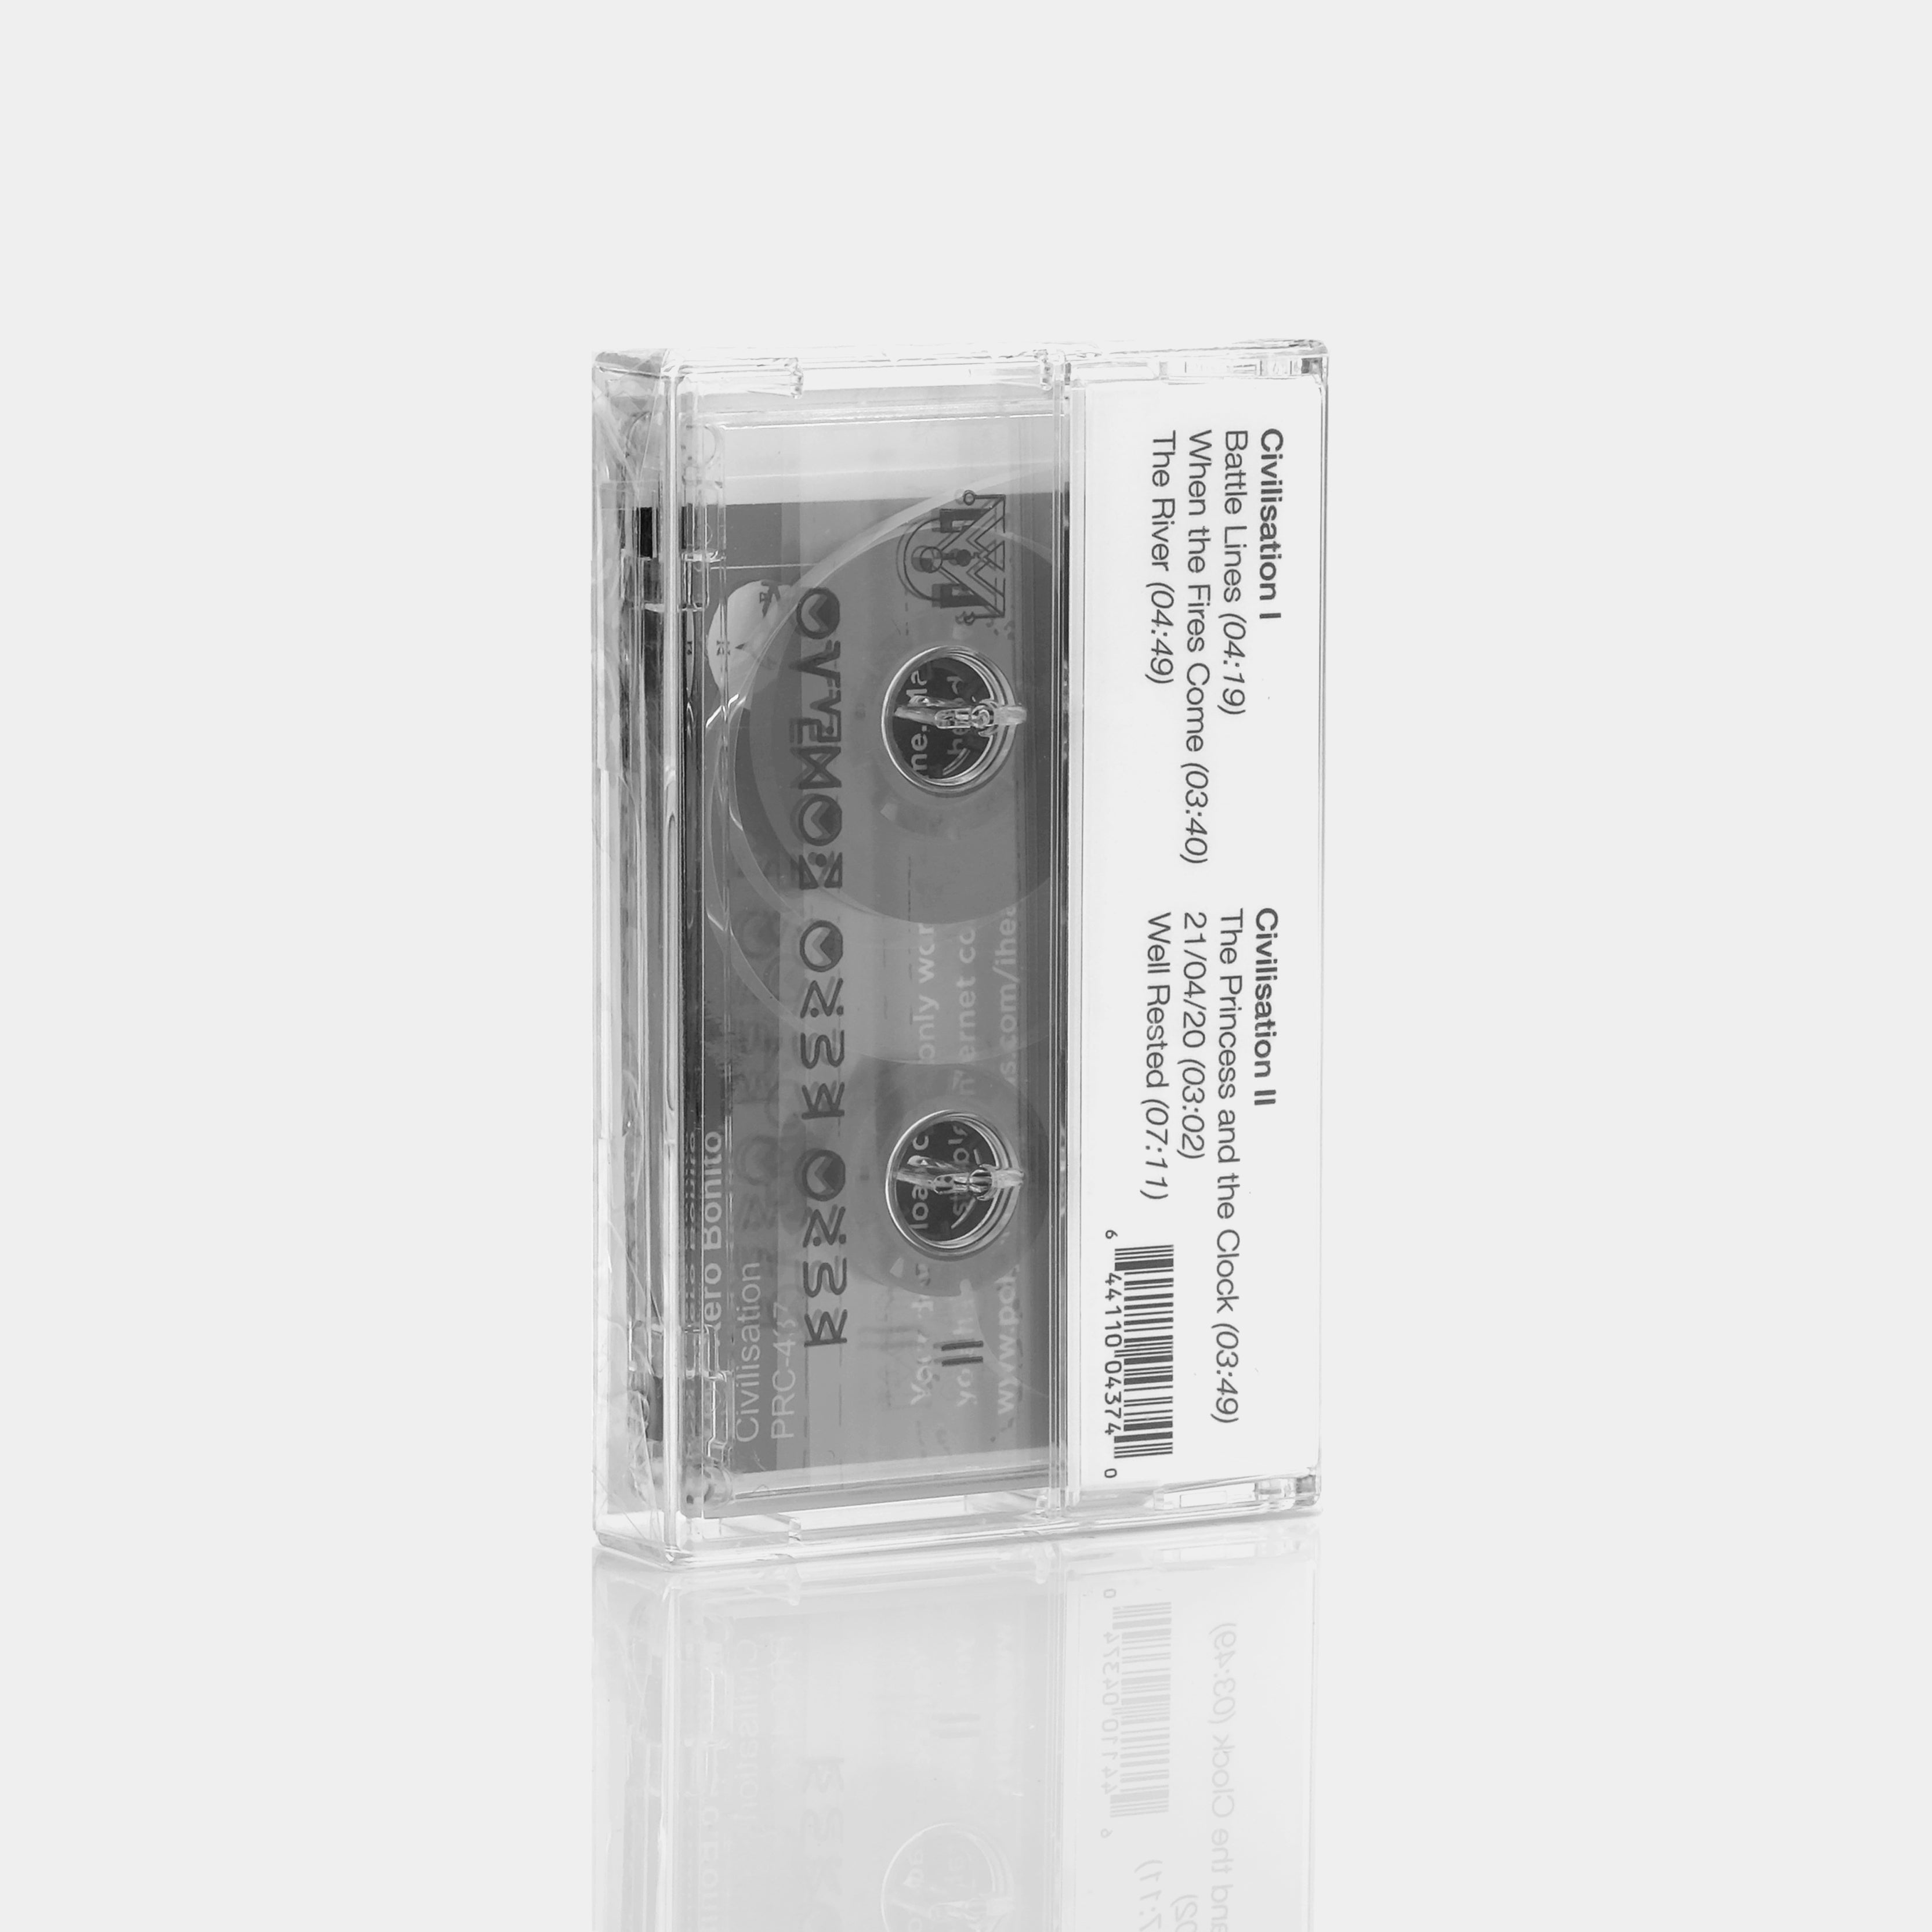 Kero Kero Bonito - Civilisation Cassette Tape